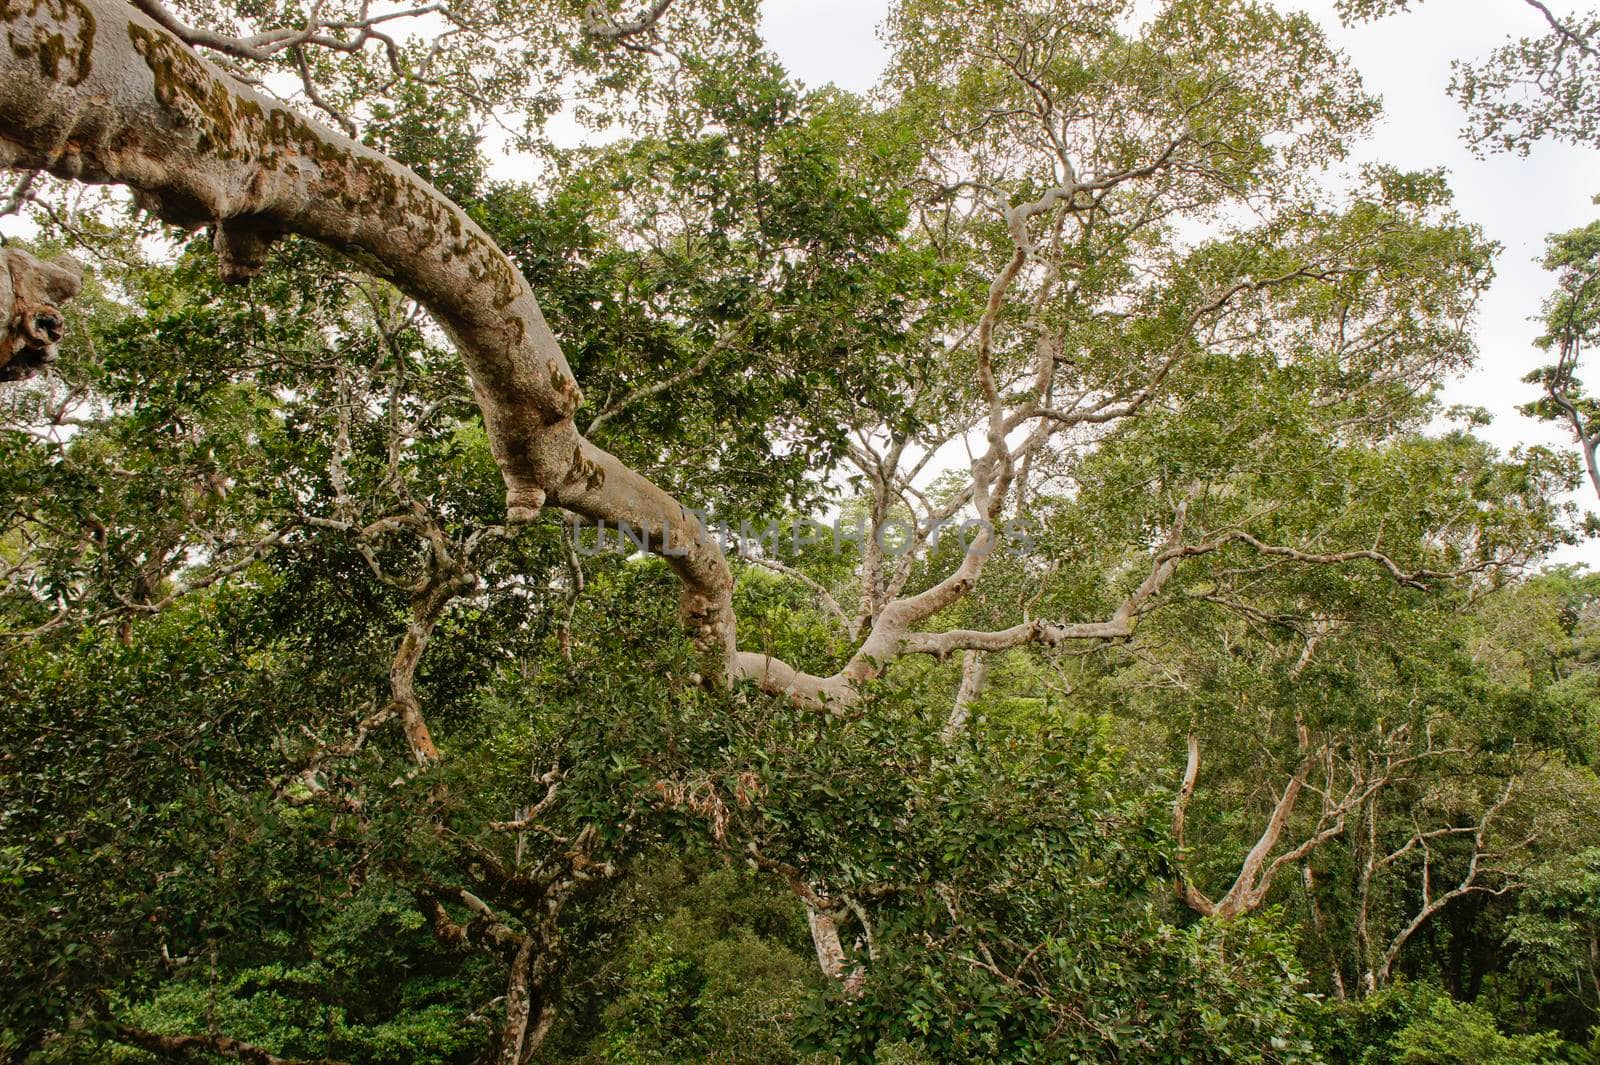 Amazon Basin Jungle, Peru, South America by giannakisphoto